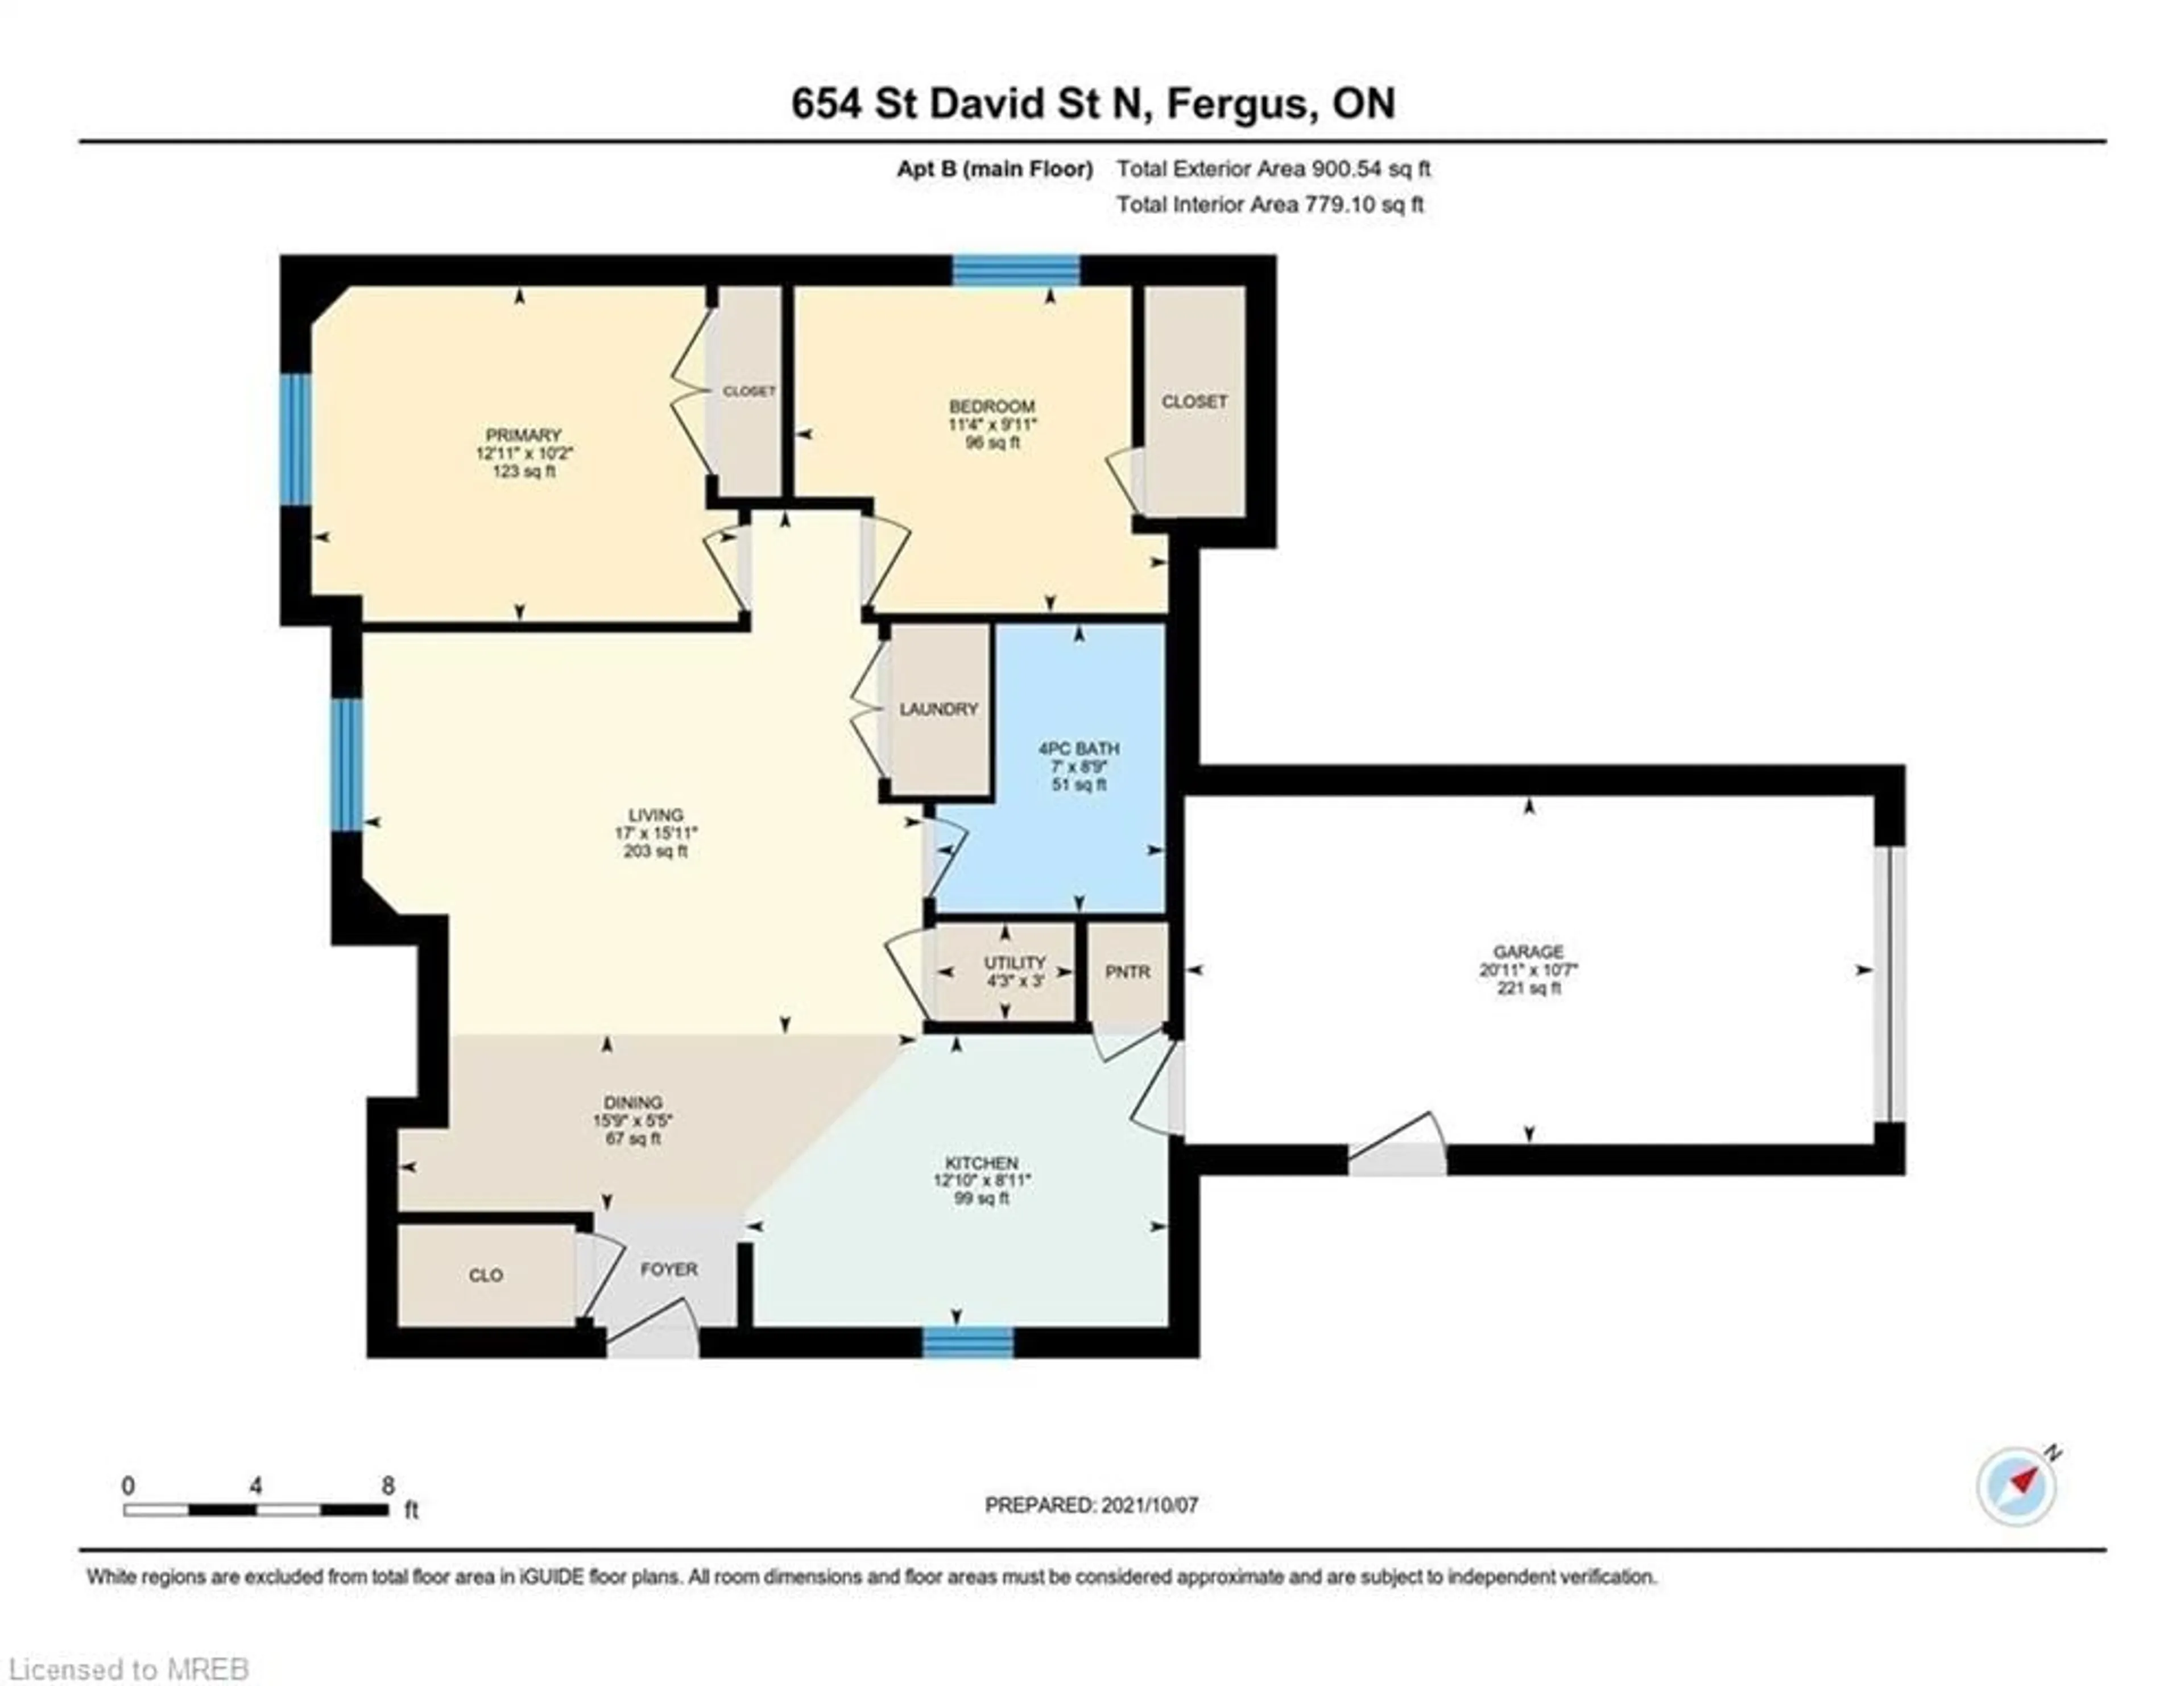 Floor plan for 654 St David St, Fergus Ontario N1M 2K7